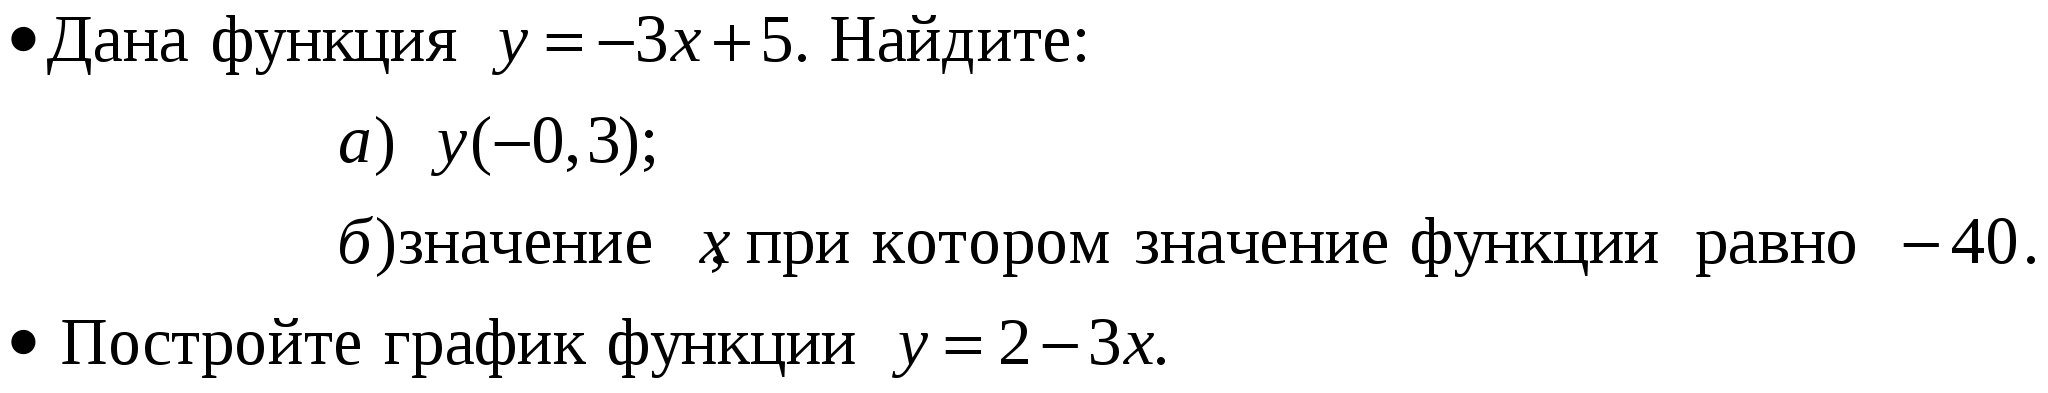 Рабочая программа по алгебре 7 класса по учебнику А.Г. Мордкович